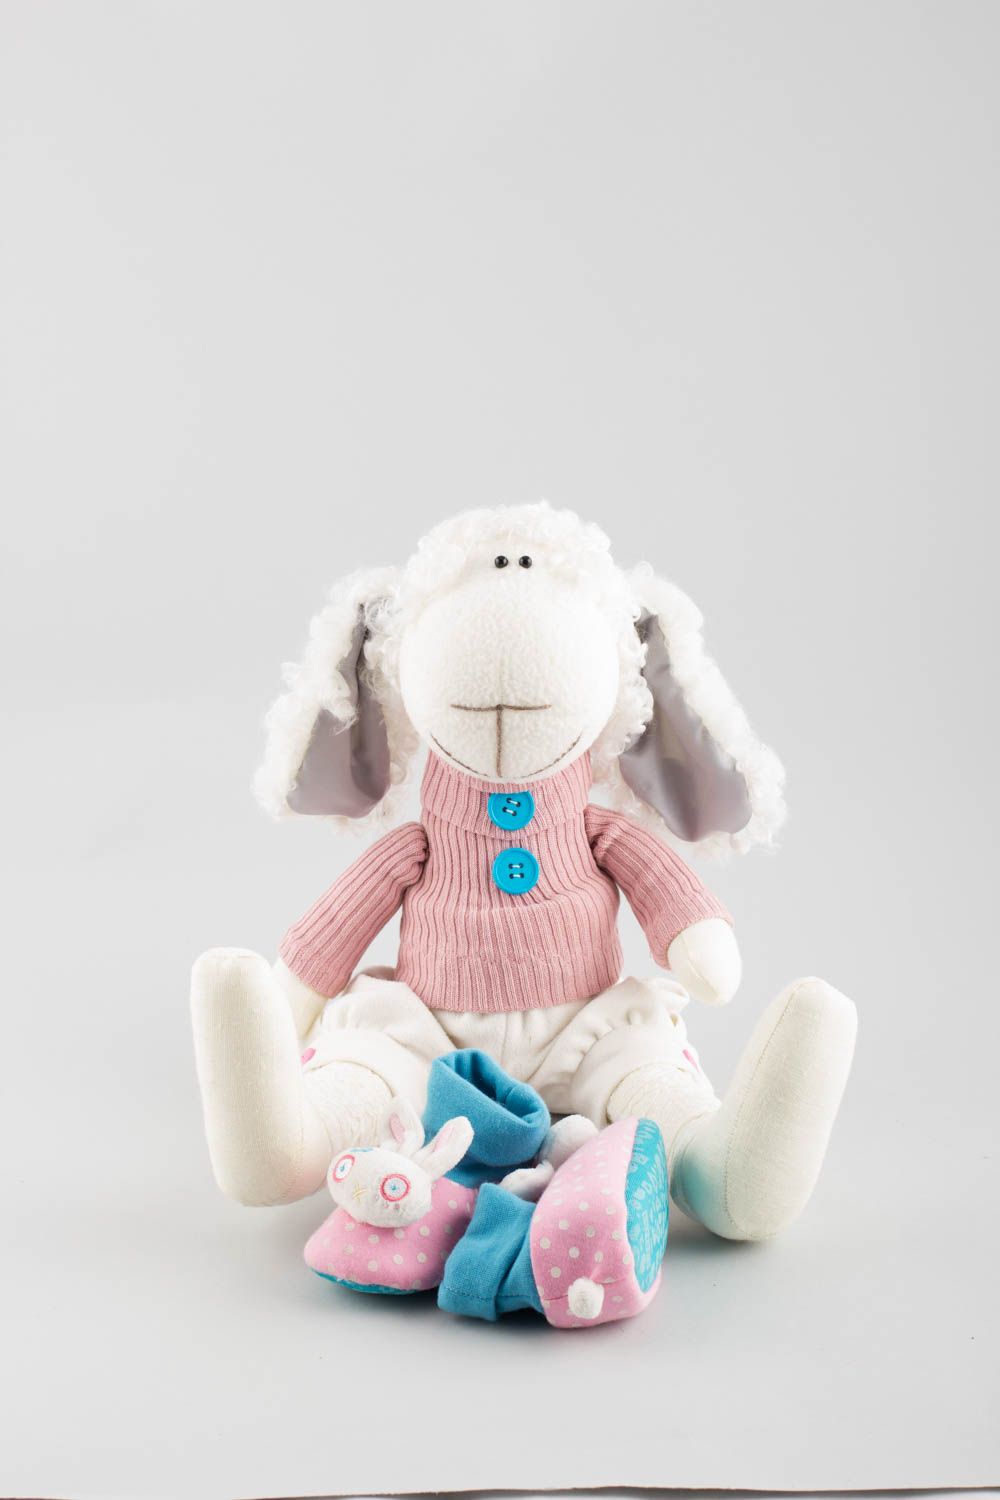 Textil Kuscheltier Schaf in rosa Kleidung niedlich Spielzeug für Kinder und Deko foto 4